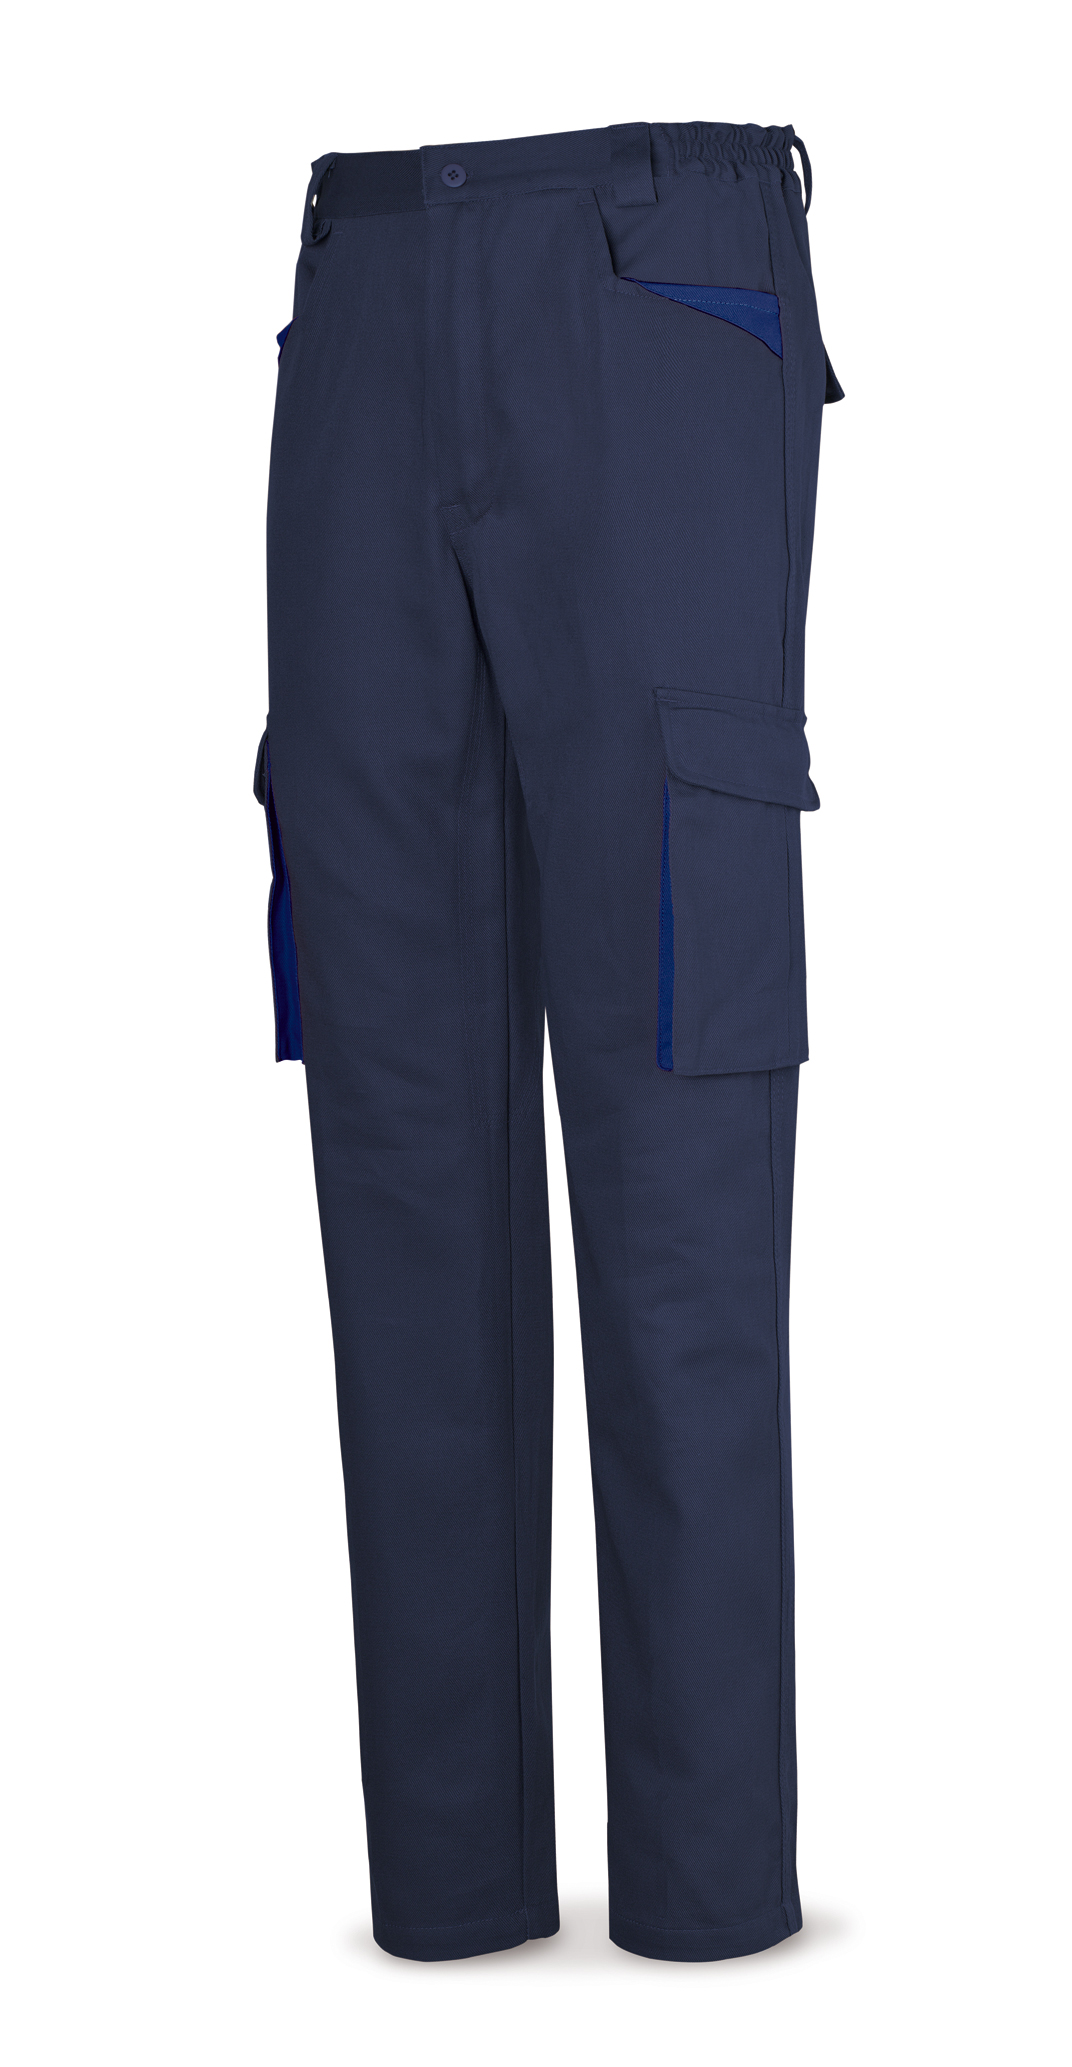 488-PAM SupTop Vetements de travail laboral Série SuperTop Pantalon en coton 270 g. Coleur: Bleu marine. 